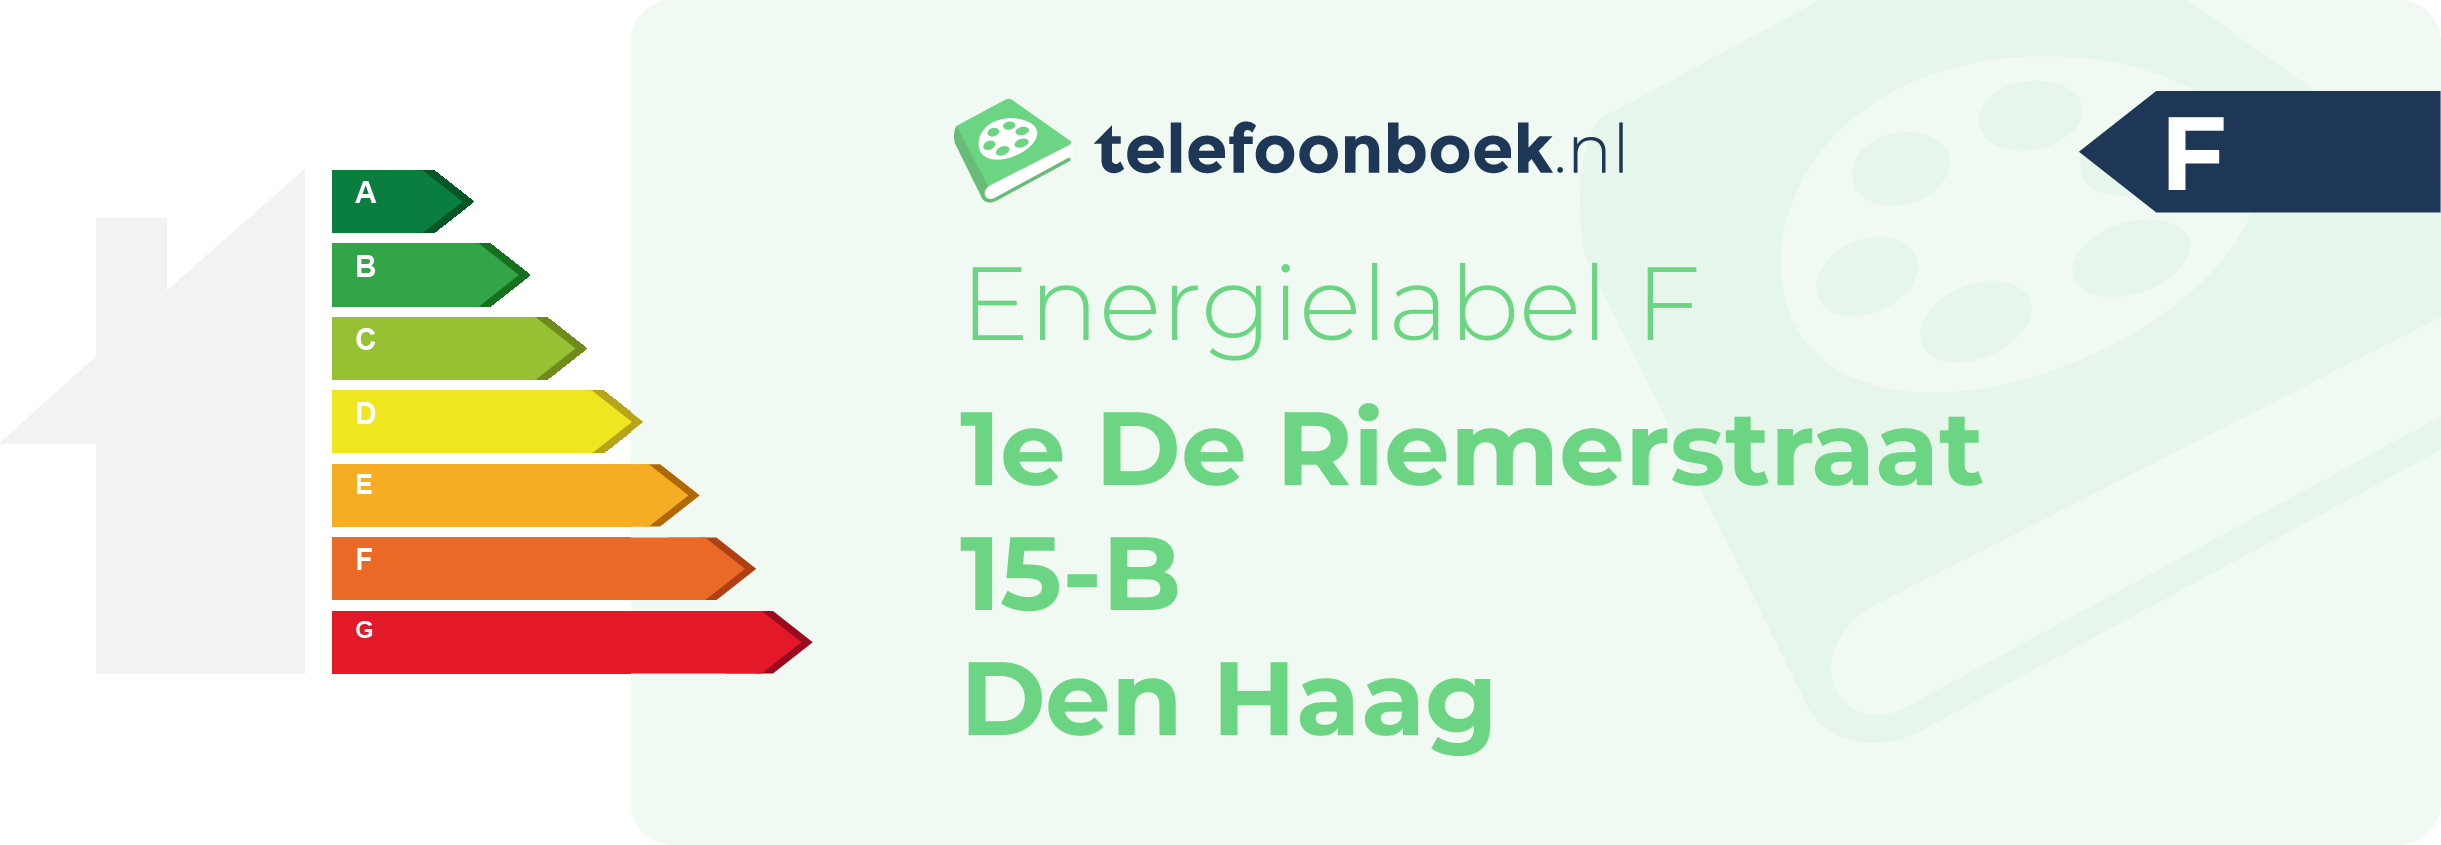 Energielabel 1e De Riemerstraat 15-B Den Haag